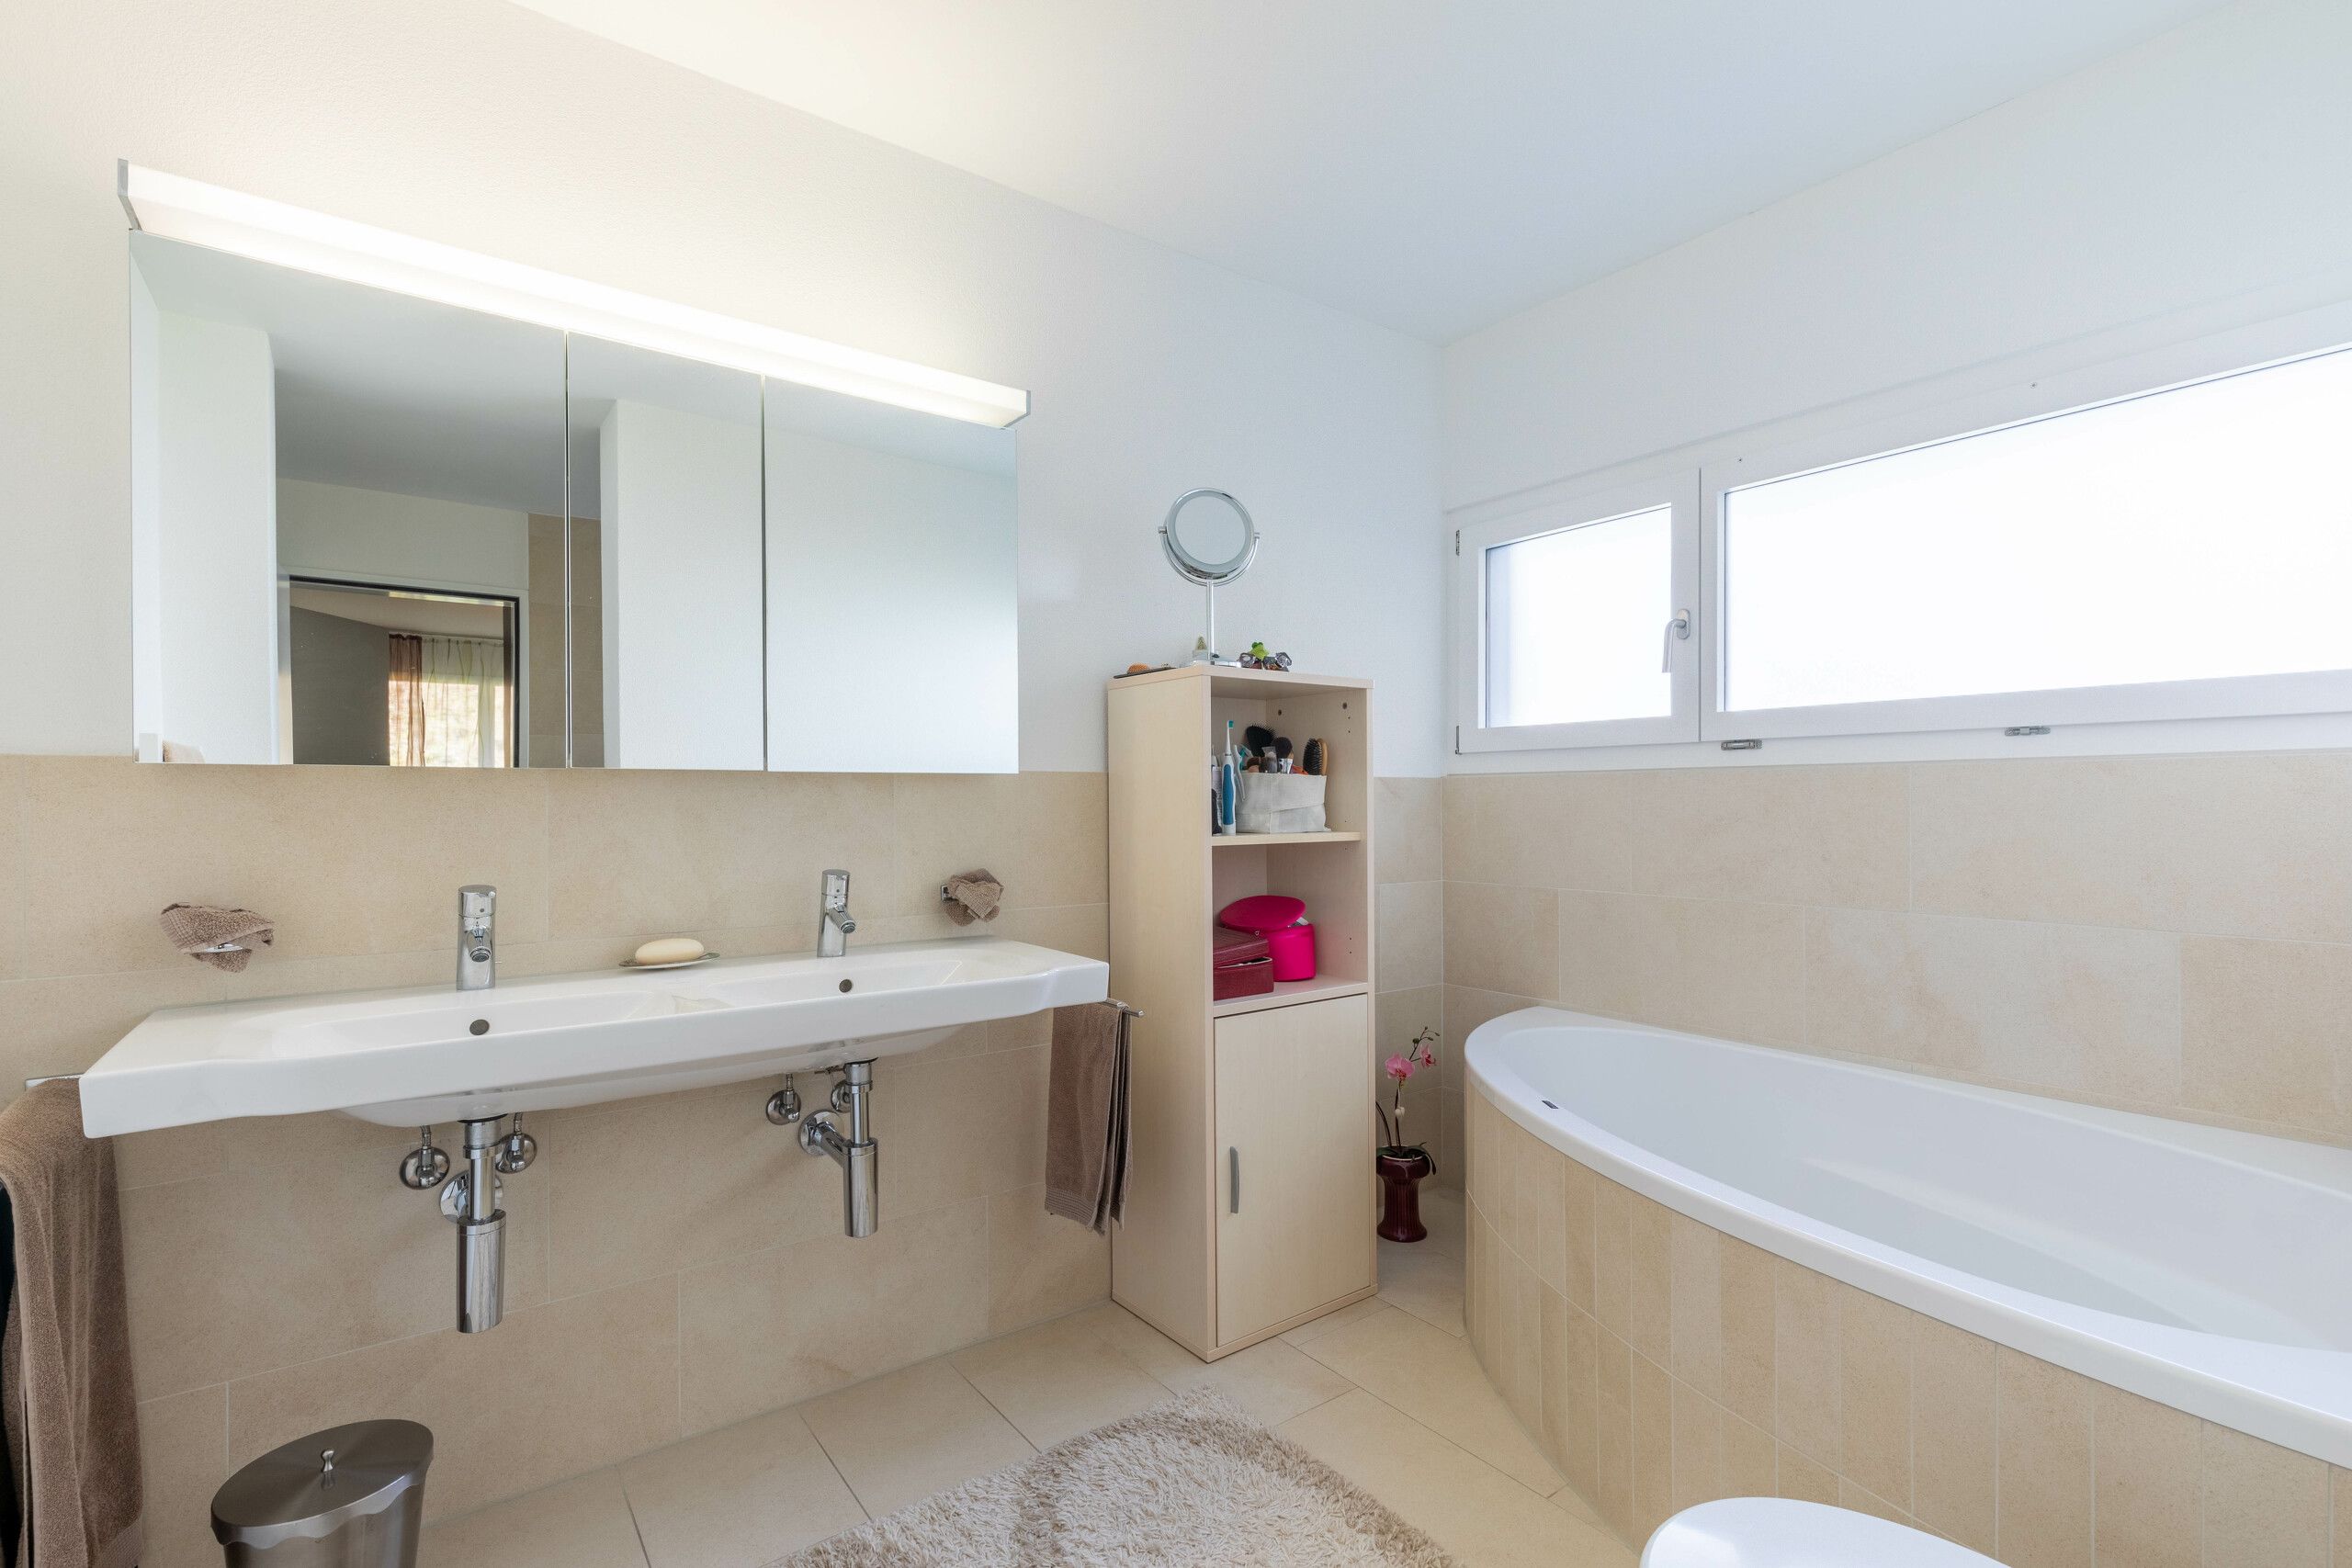 Badezimmer en Suite mit Dusche, Eckbadewanne, Doppellavabo und WC (OG)